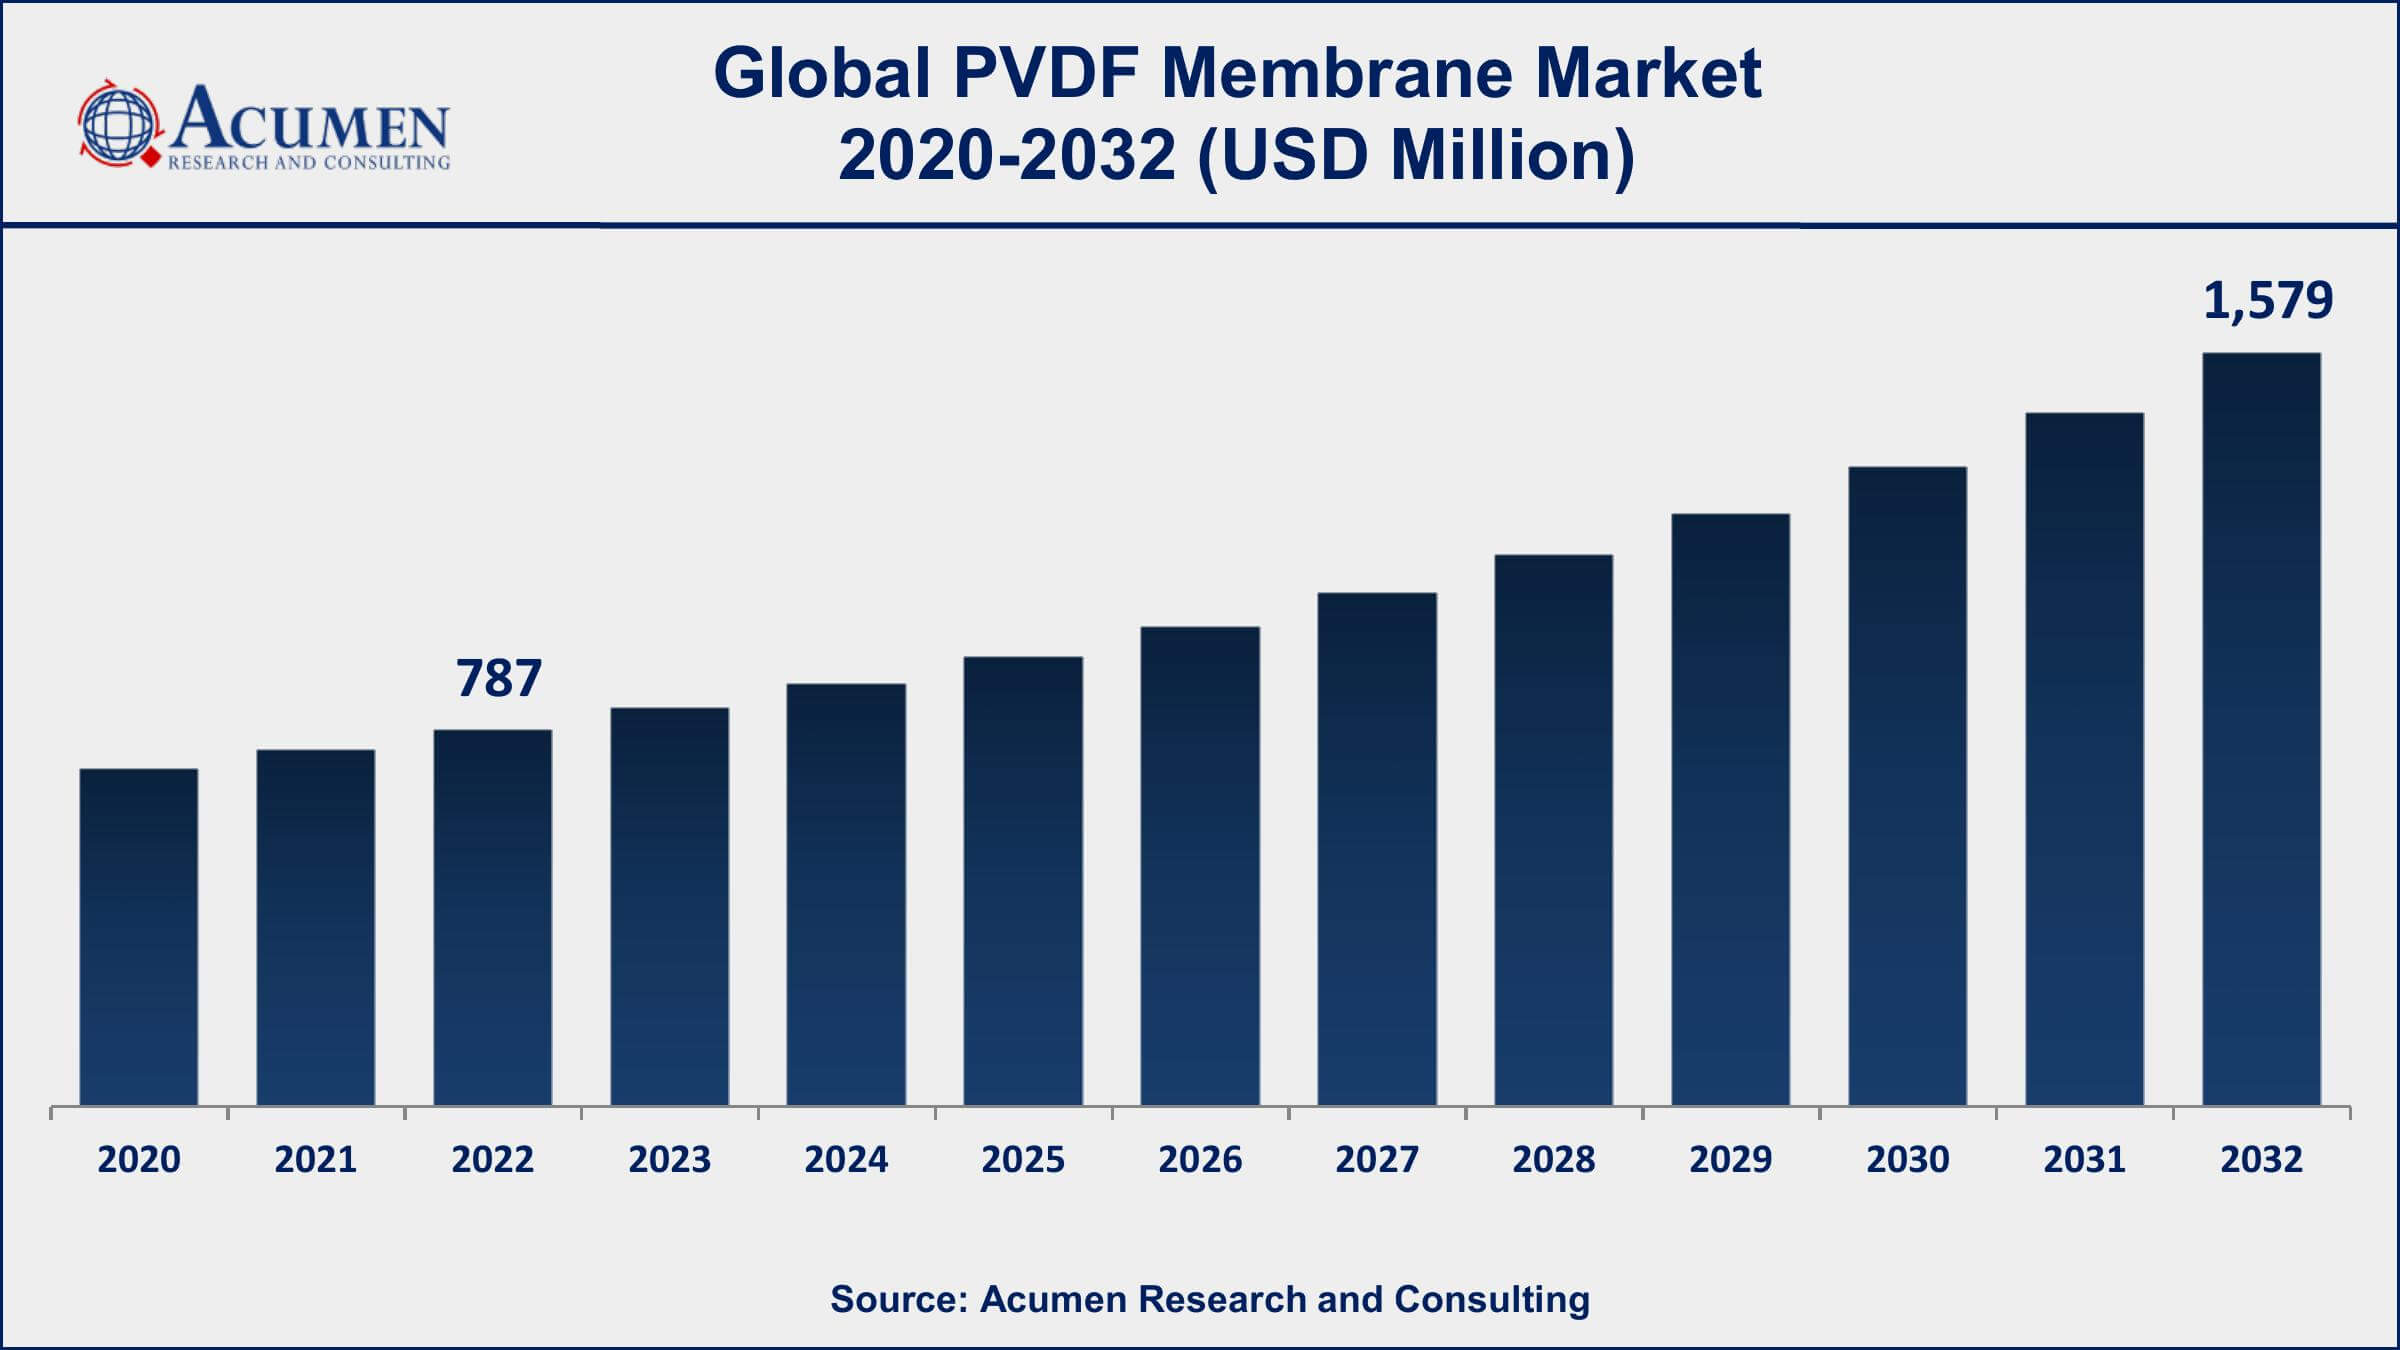 PVDF Membrane Market Dynamics